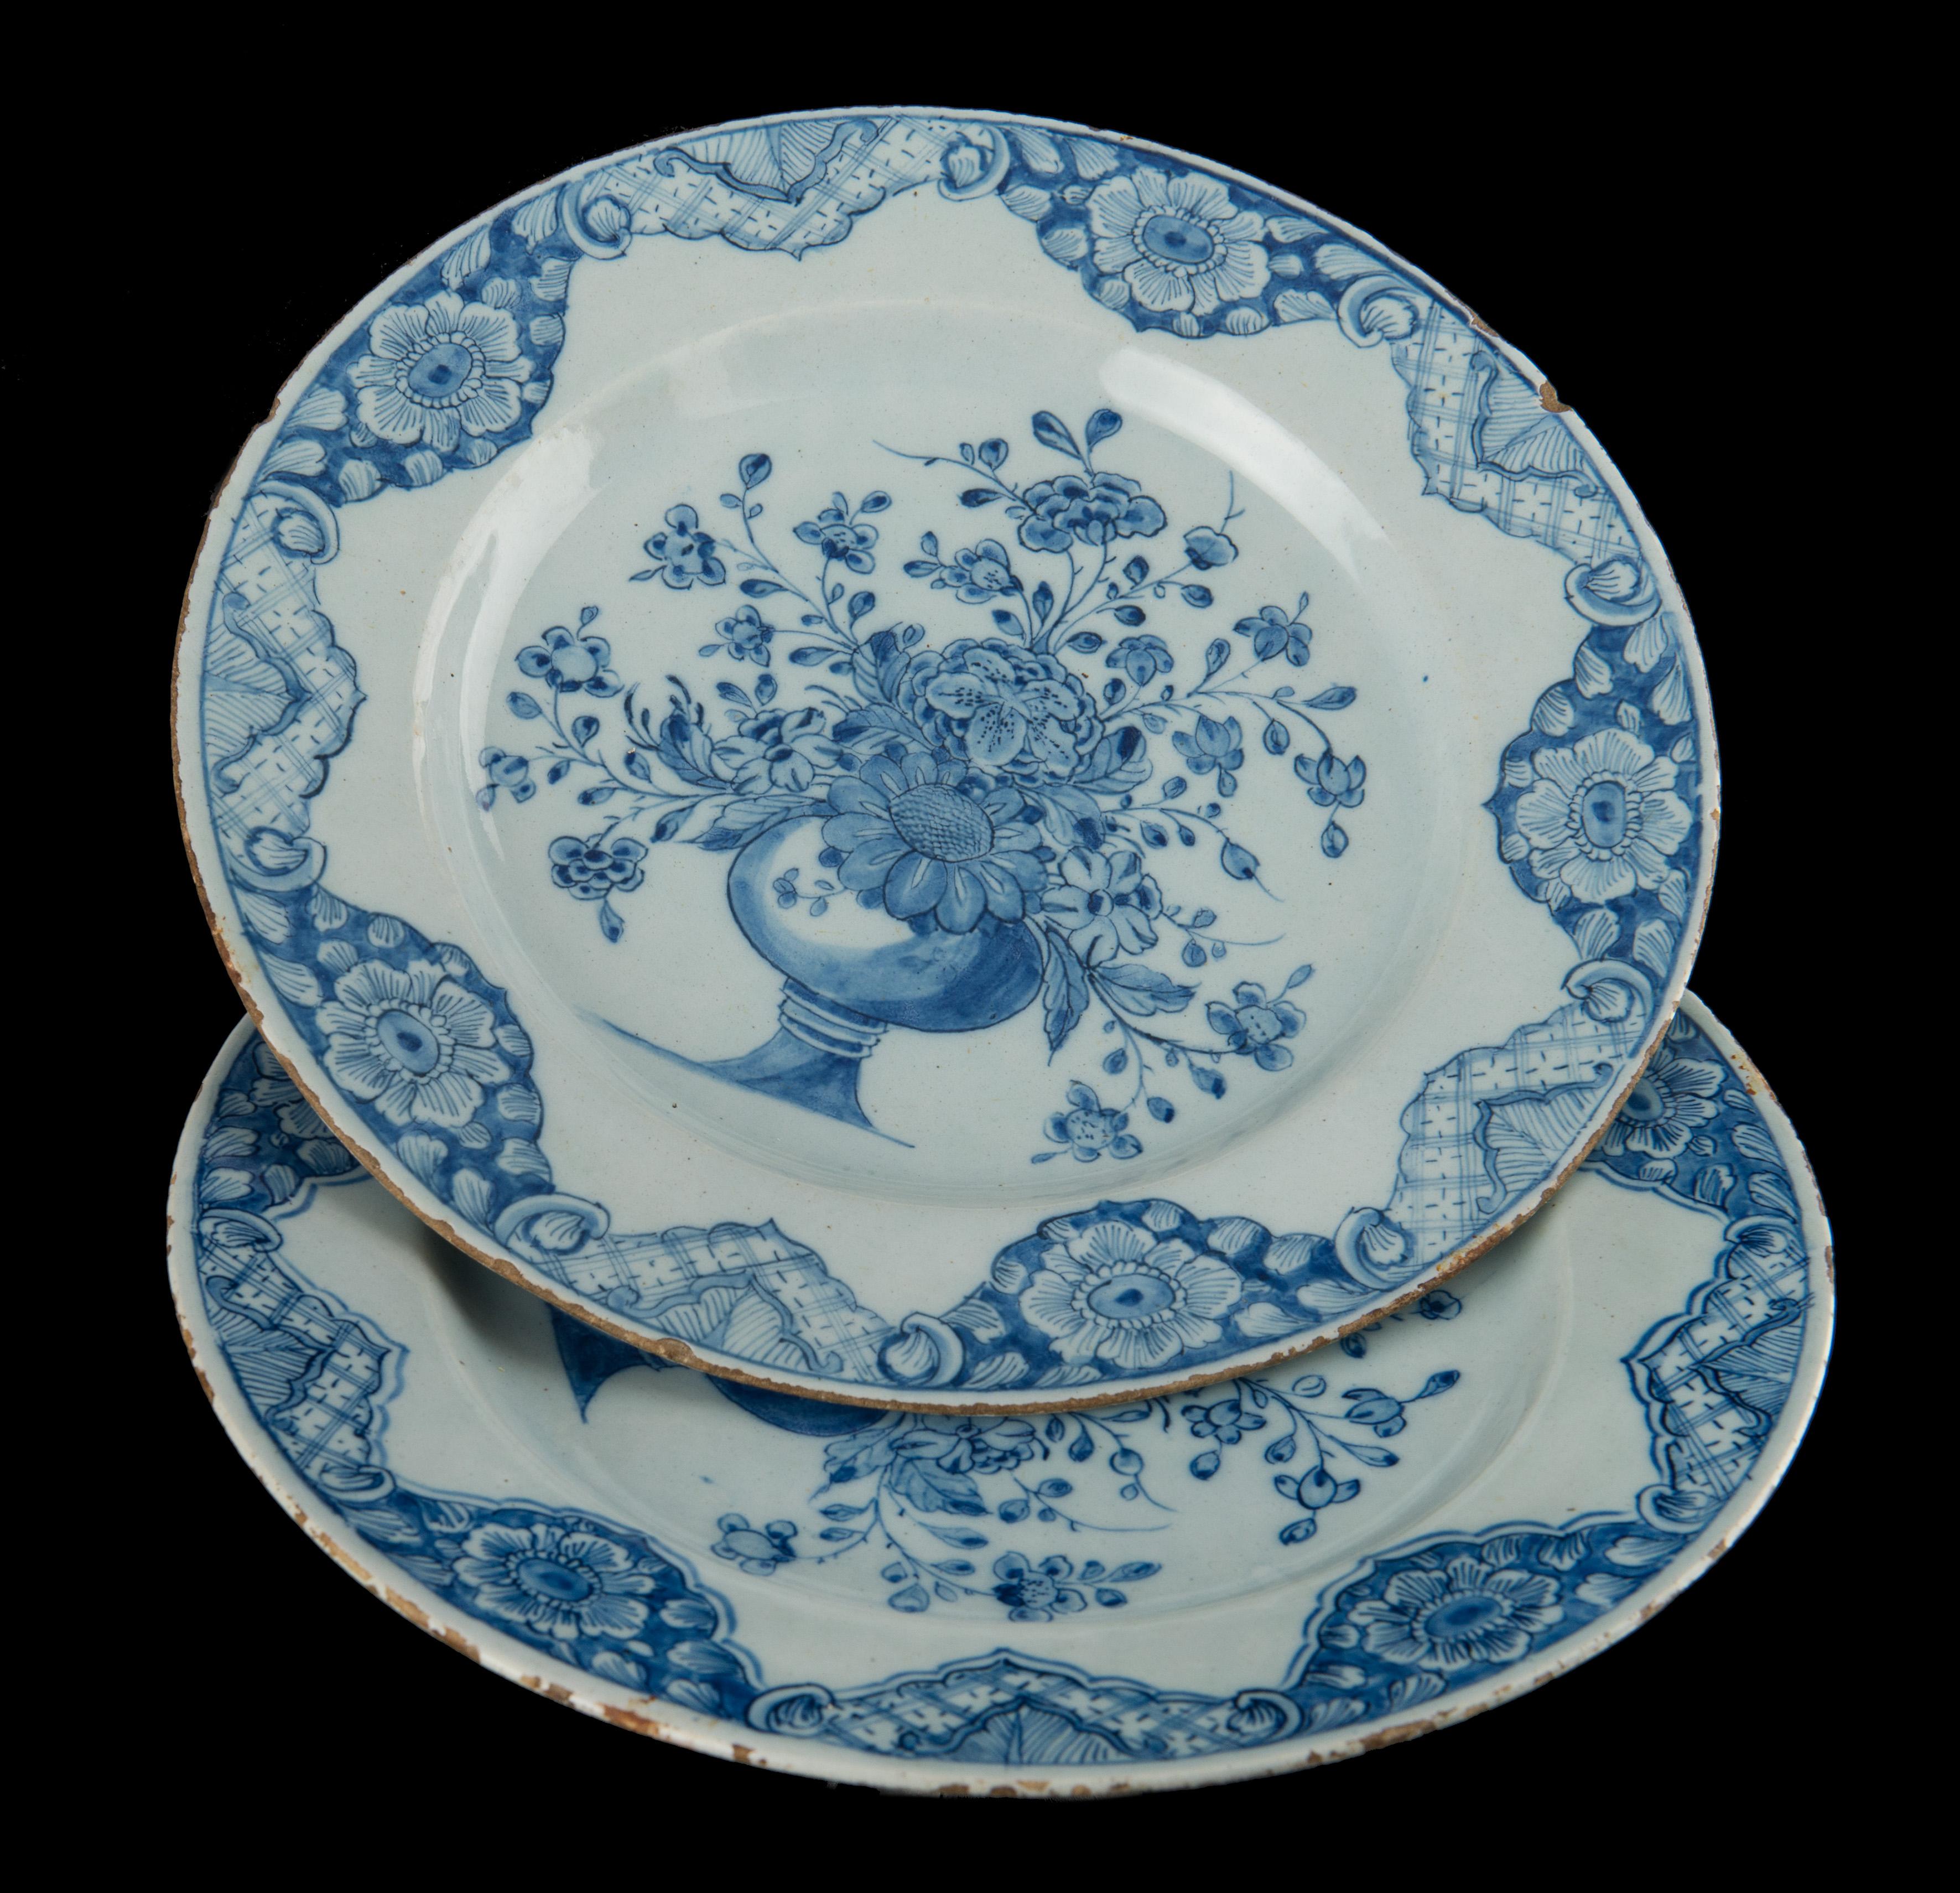 Paar blaue und weiße Teller mit Blumenvasen. Delft, datiert 1760. Mark: LV .

Ein Paar blau-weiße Teller mit breitem Rand, in der Mitte mit einem üppigen Blumenstrauß in einer Vase auf einem hochgezogenen Fuß bemalt. Die Bordüre ist mit